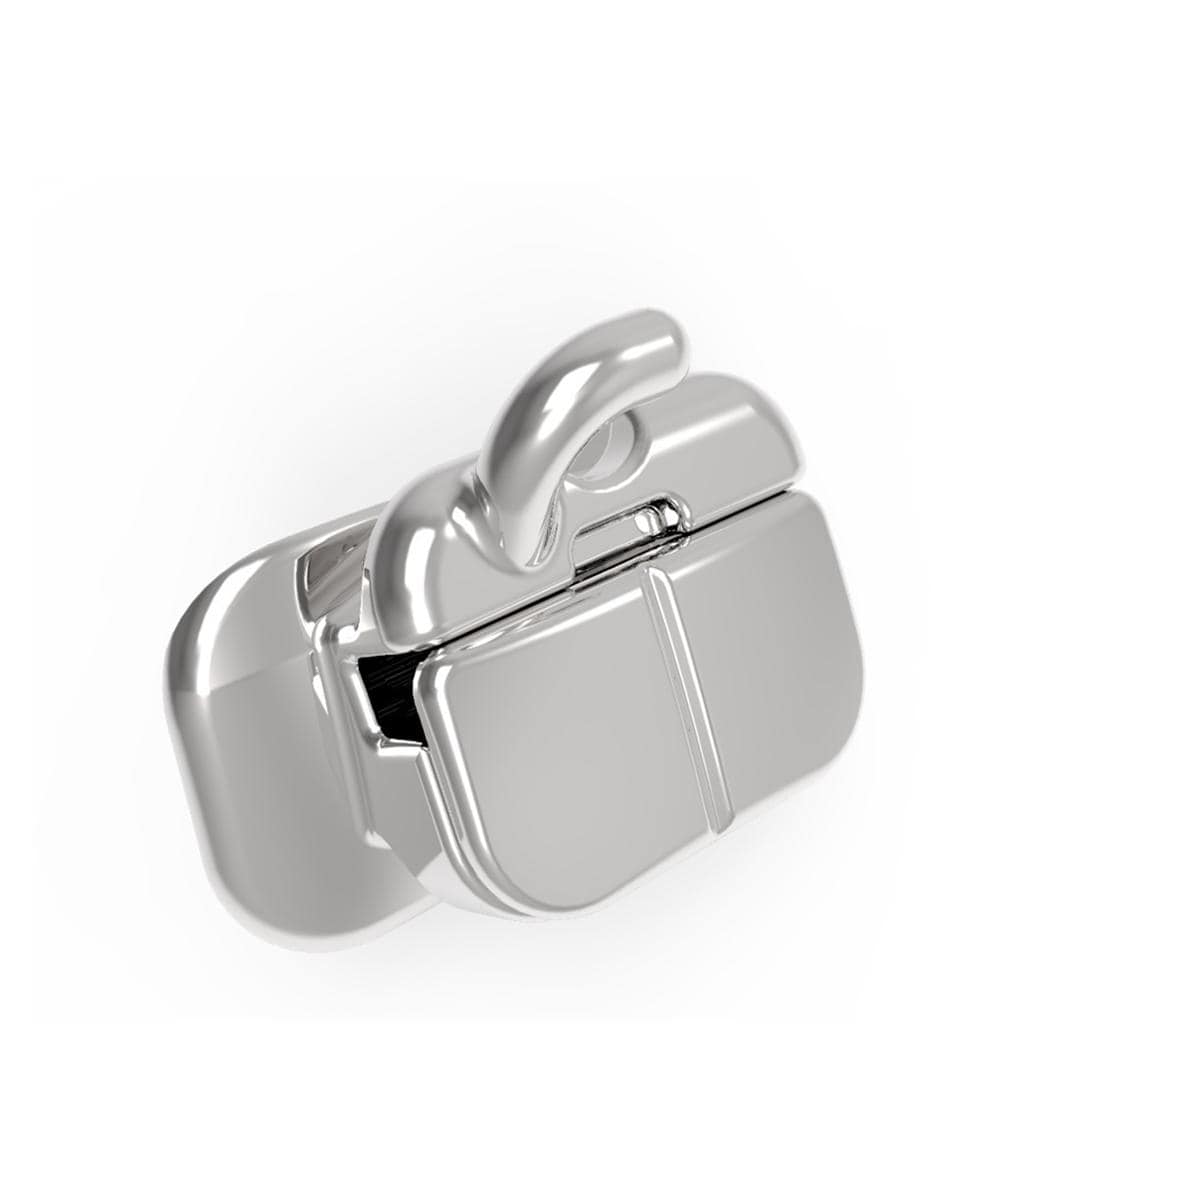 CARRIERE SLX 3D Metal Self Ligating Bracket .022 - UL7 HK (977-UL7-HK-10), 10 stuks